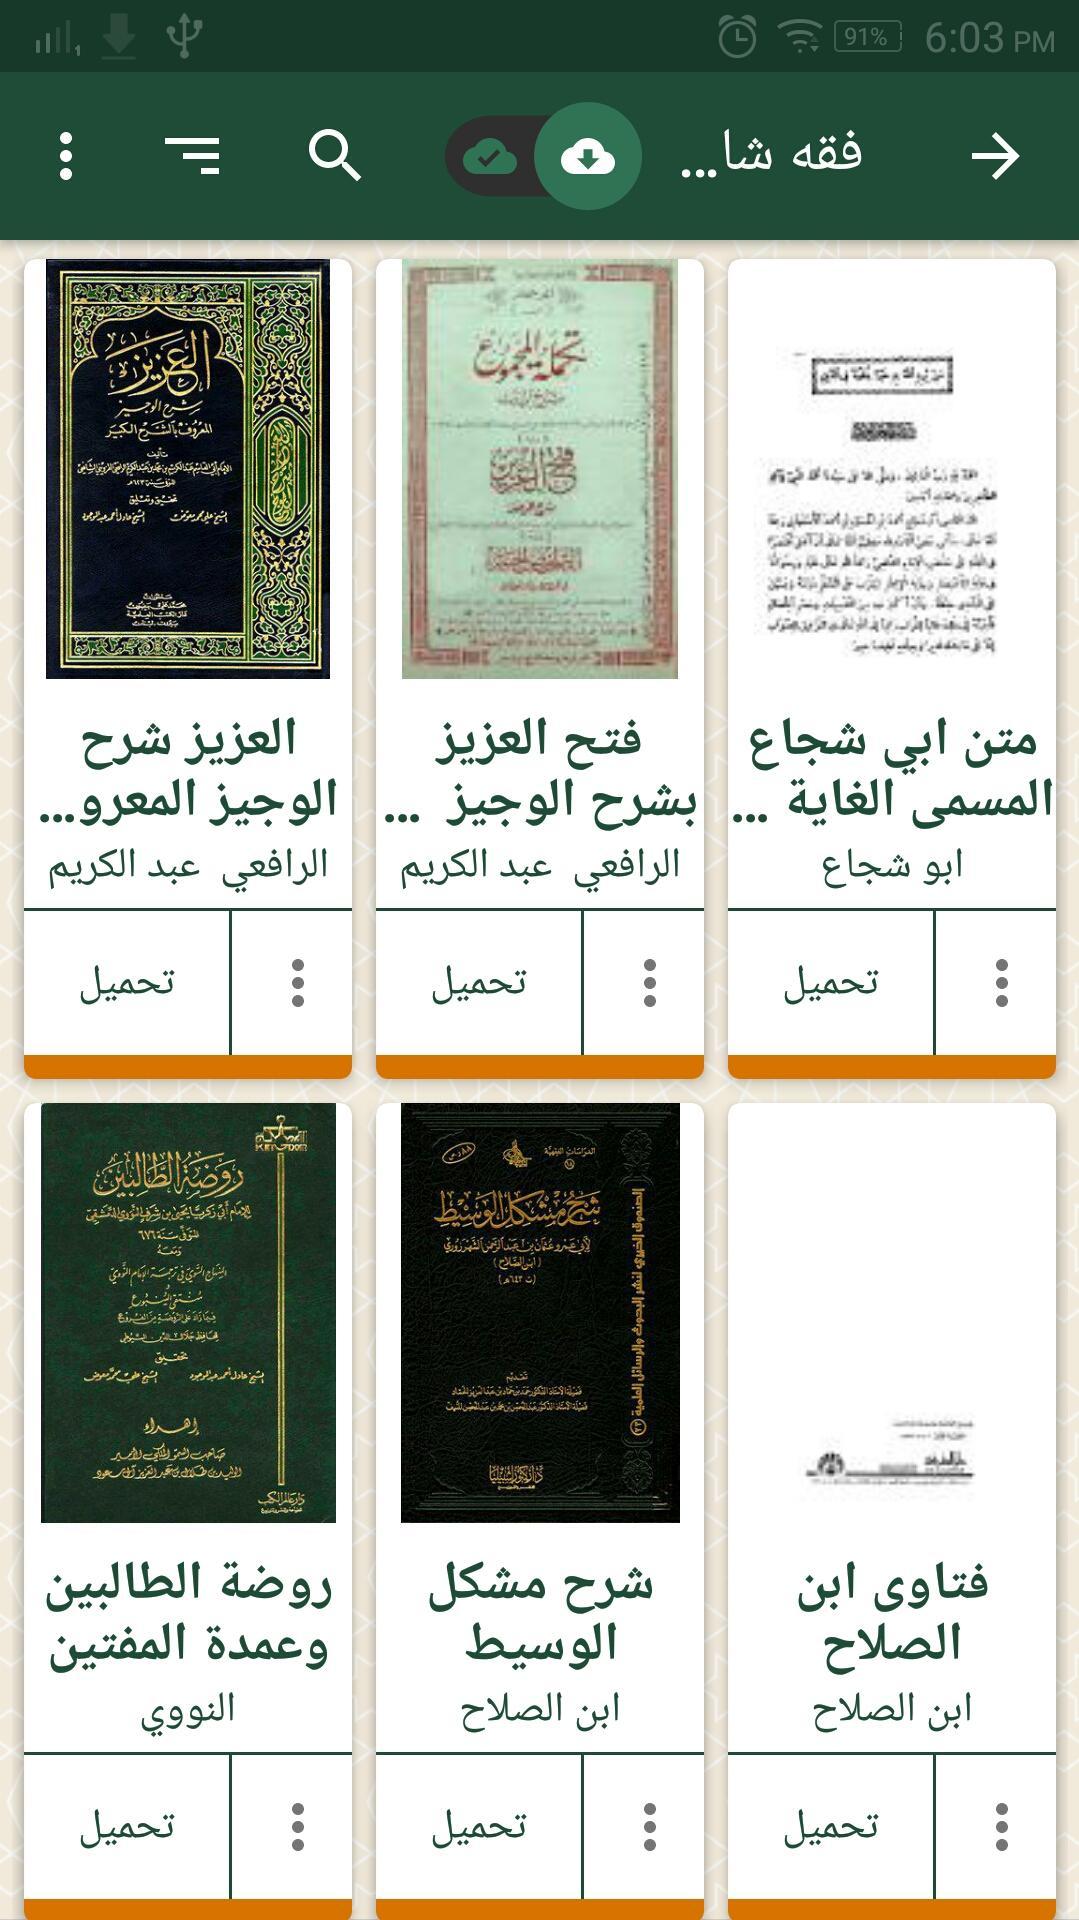 المكتبة الإسلامية - قارئ المكتبة الشاملة - مجانية for Android - APK Download